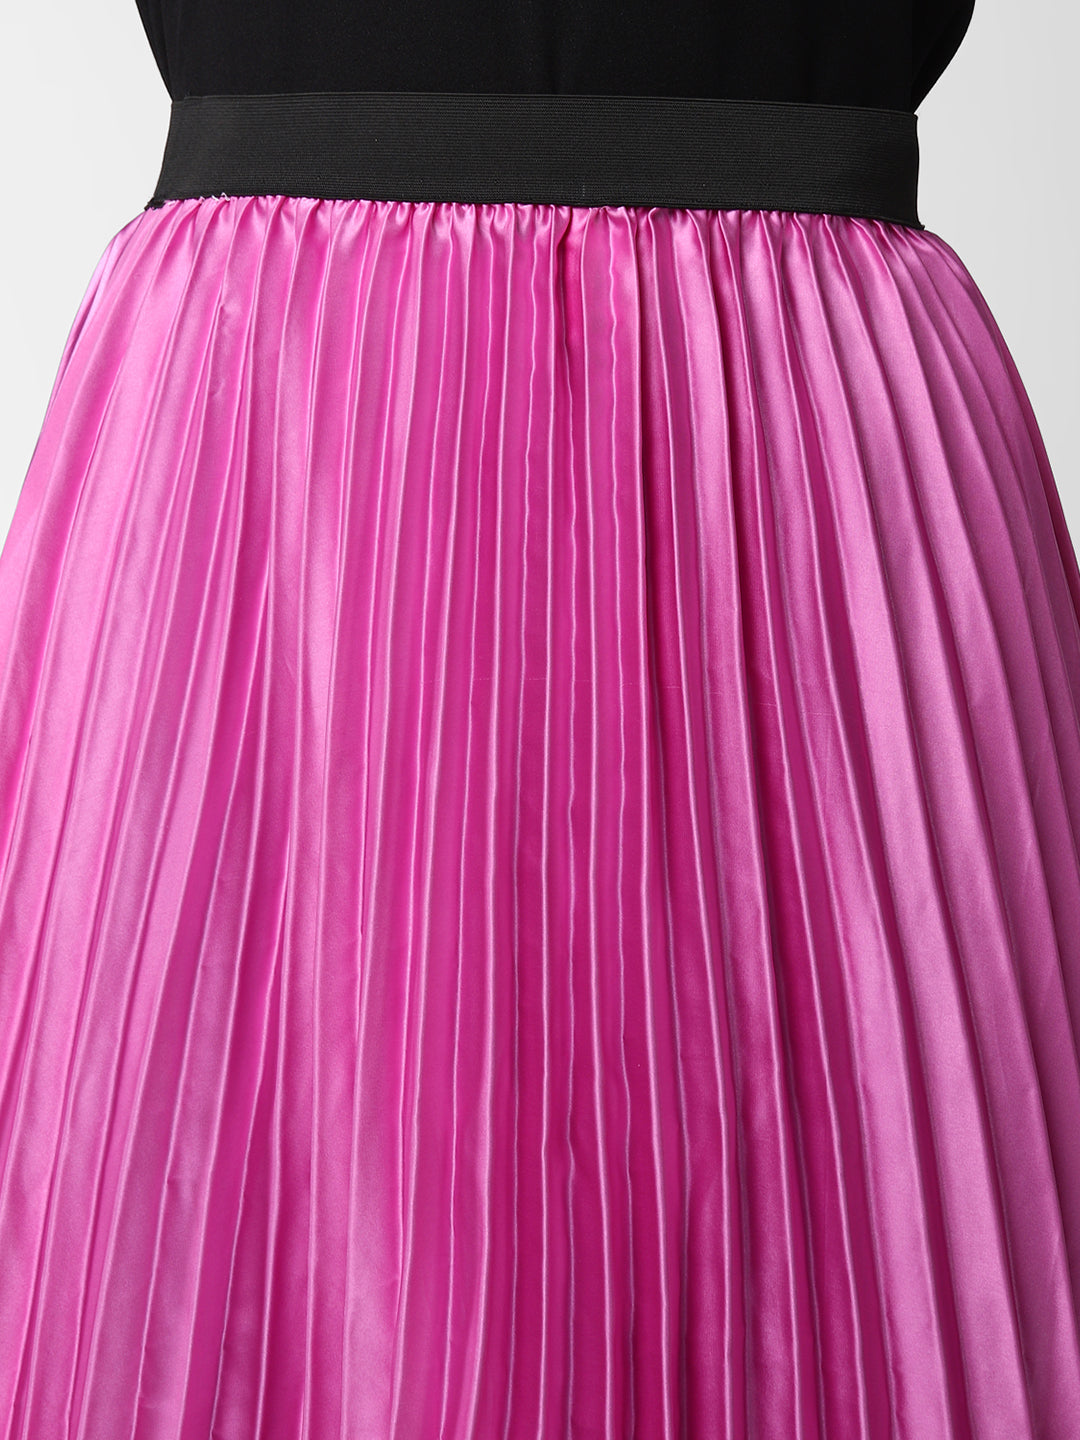 Women's Lavender Satin Pleated Skirt